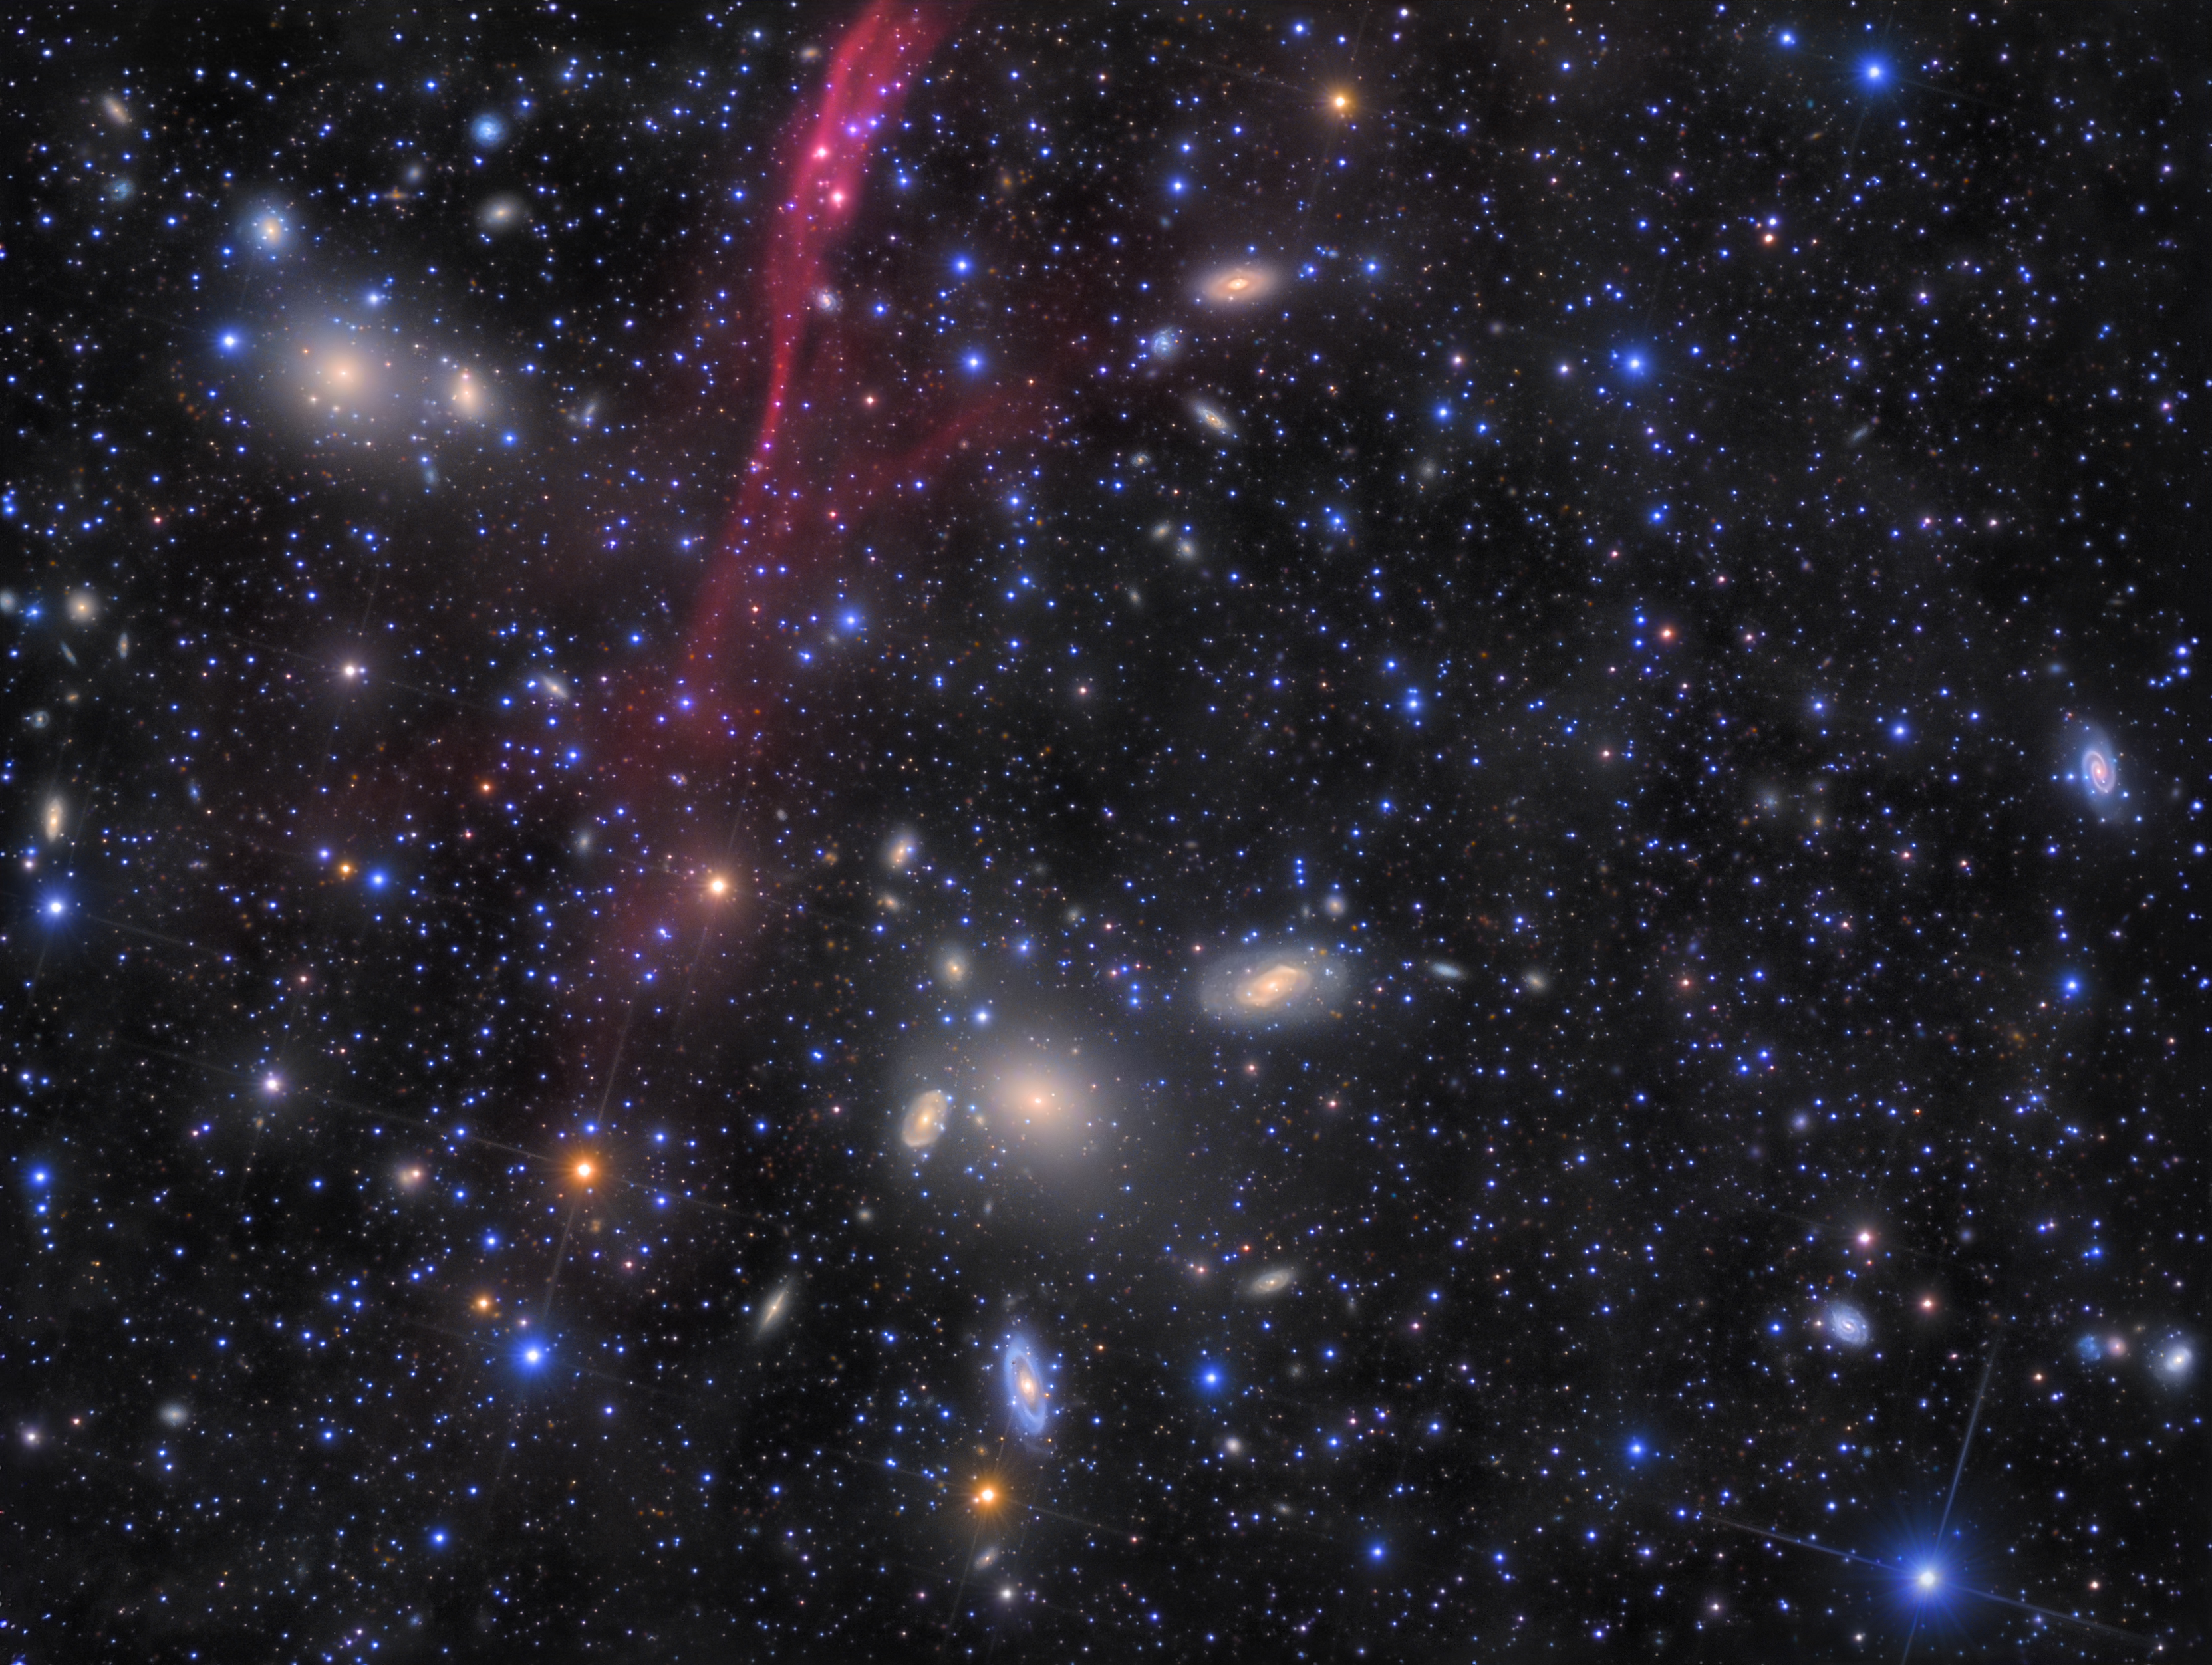 AstroCamera2021, autor: Wahl Olsen (kategoria Obiekty głębokiego nieba) Źródło: AstroCamera